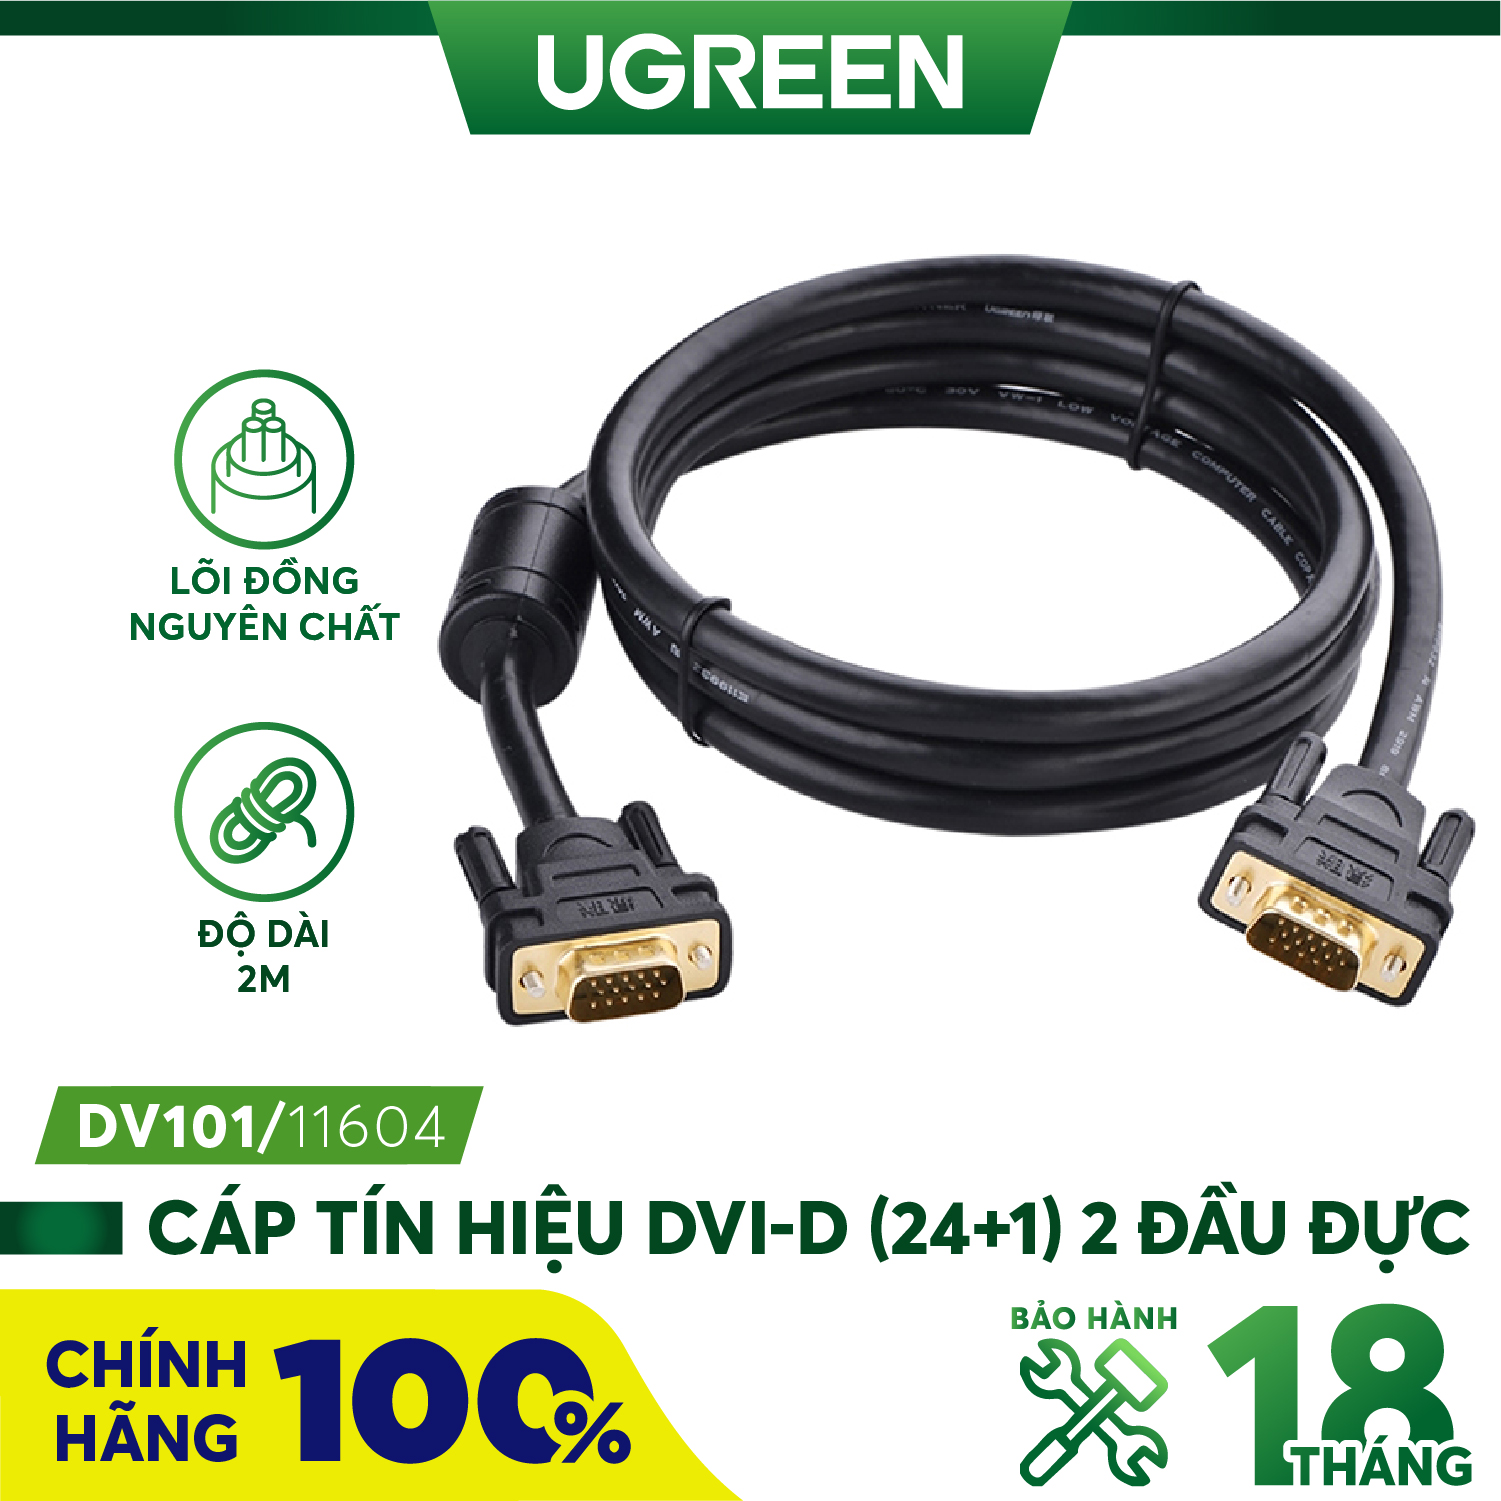 Cáp tín hiệu DVI-D (24+1) 2 đầu đực dài từ 1-30m UGREEN DV101 - Hàng phân phối chính hãng - Bảo hành 18 tháng